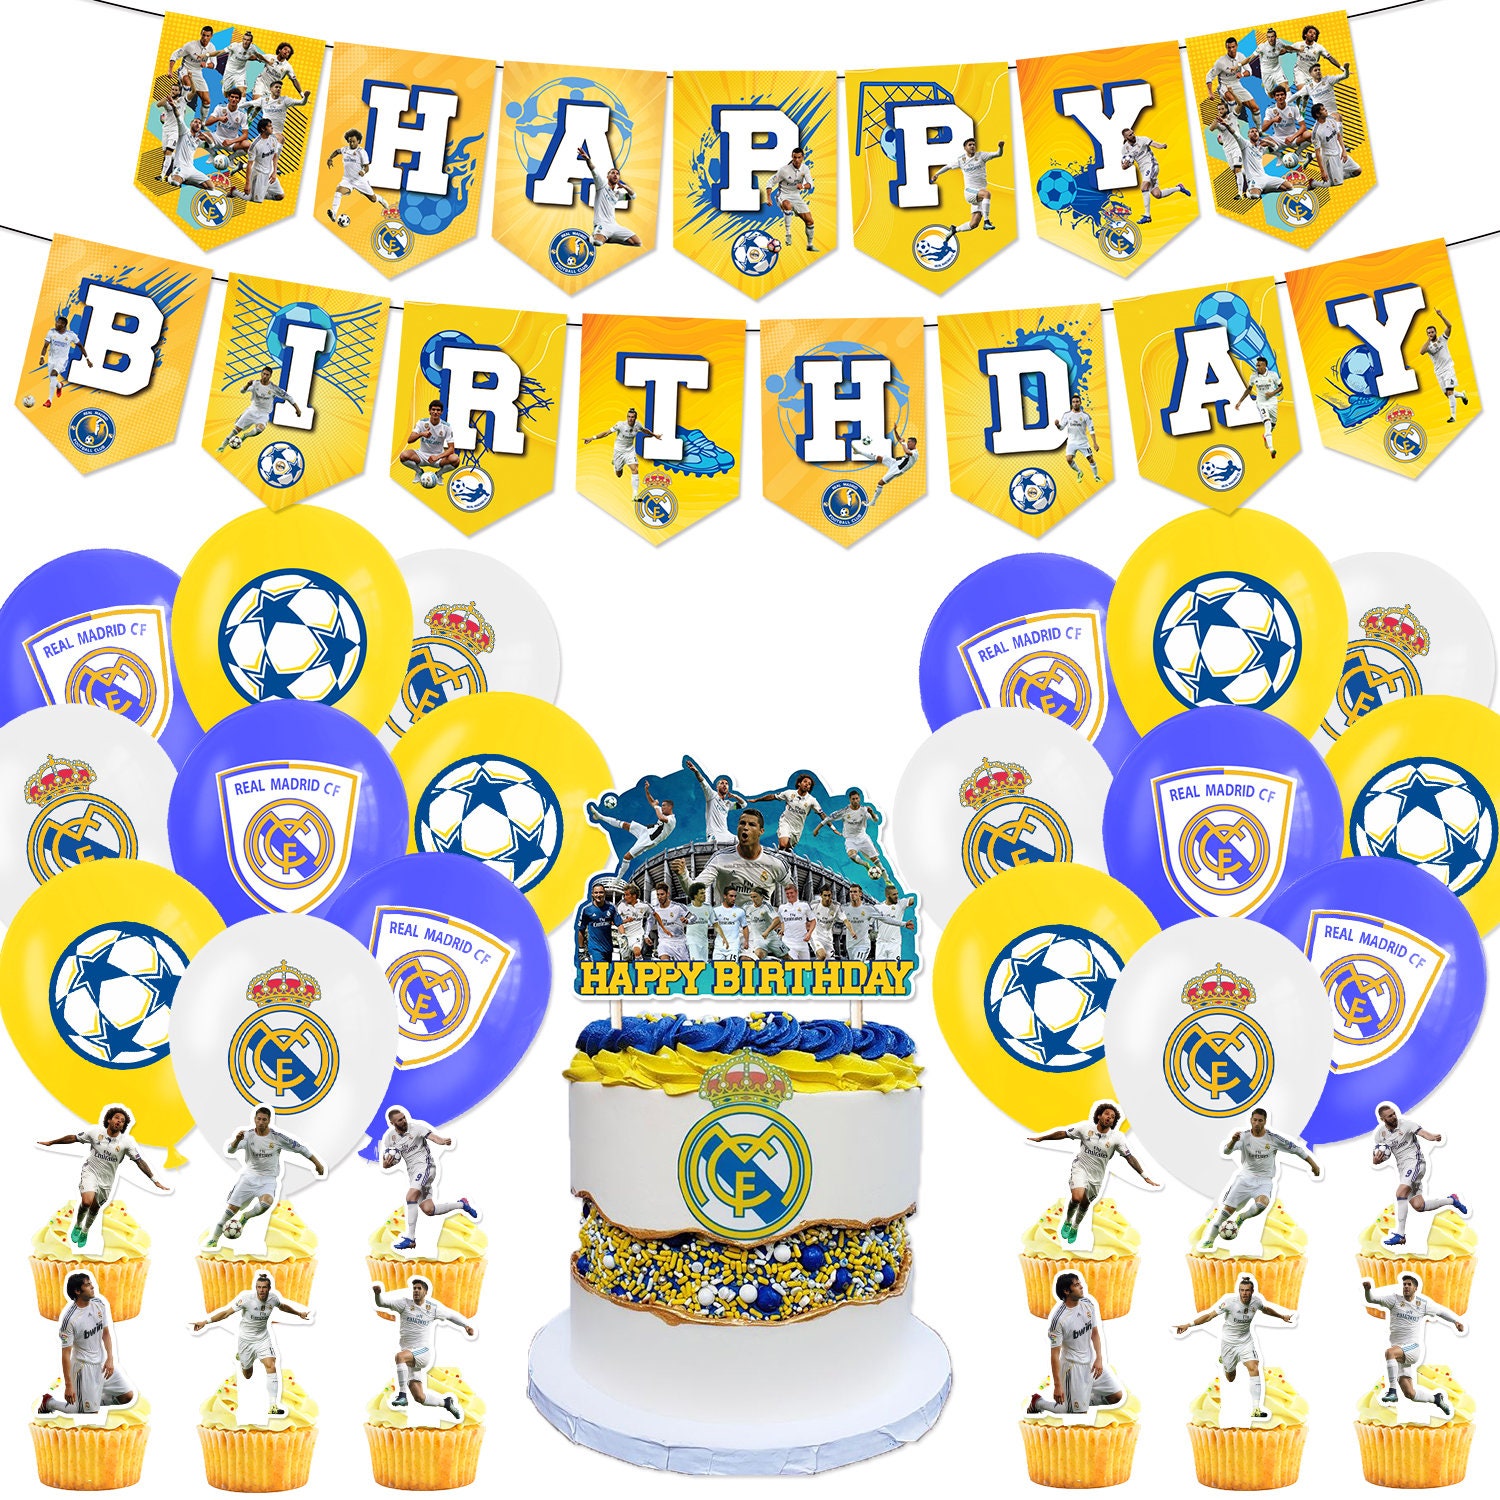 Toile de fond pour fête d'anniversaire Real Madrid CF Cristiano Ronaldo -  Décorations de fête d'anniversaire Benzema - Bannière de football -  Accessoires de fête pour garçons et enfants - 1,5 x